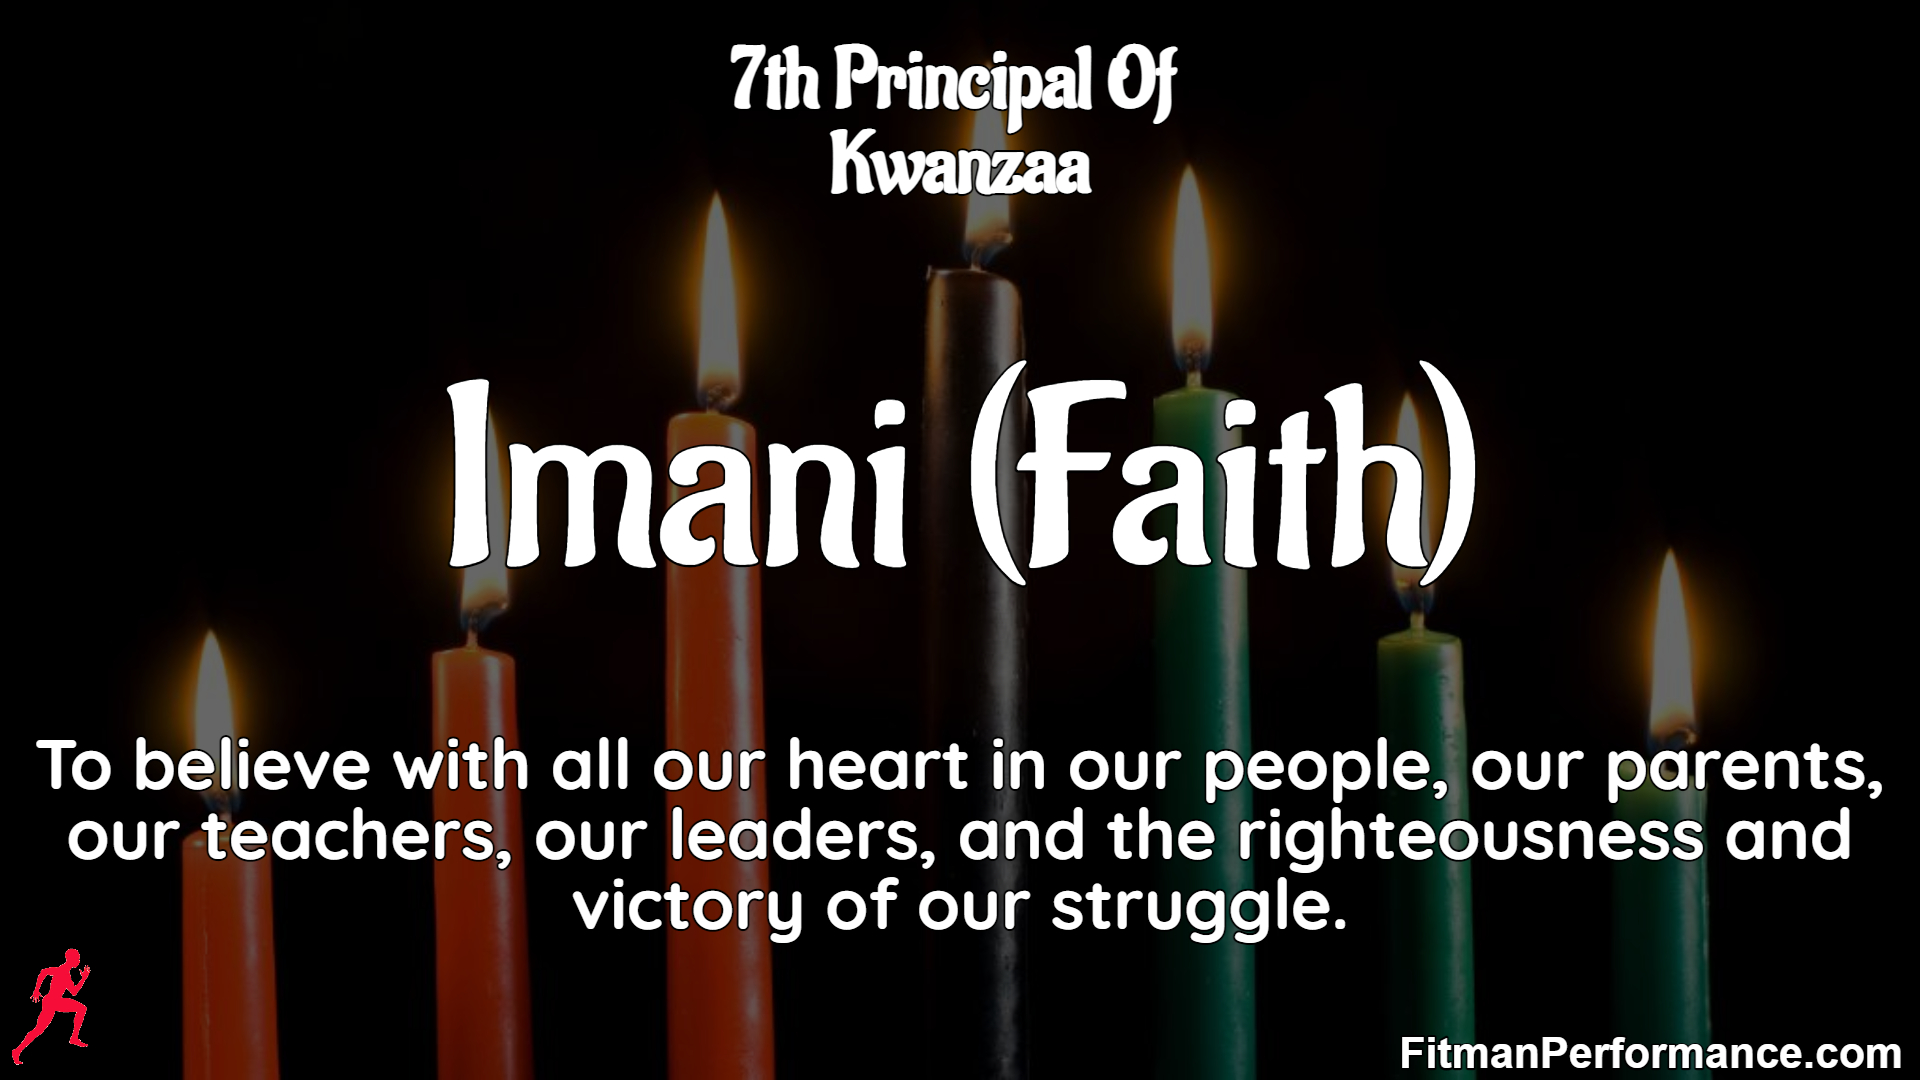 Imani: The 7th Principal Of Kwanzaa